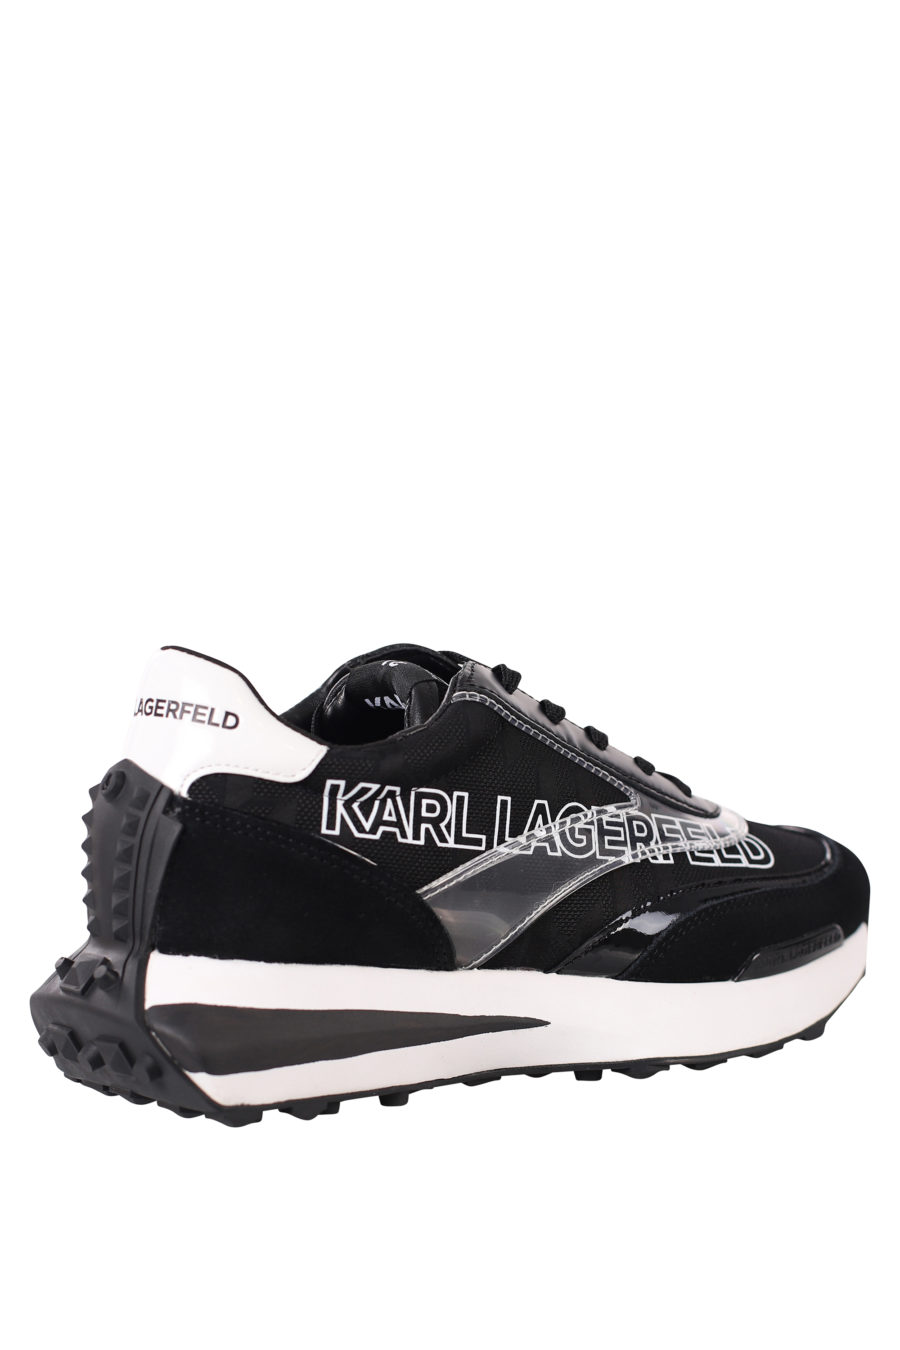 Zapatillas negras "zone" con logo blanco en silueta y suela blanca - IMG 0439